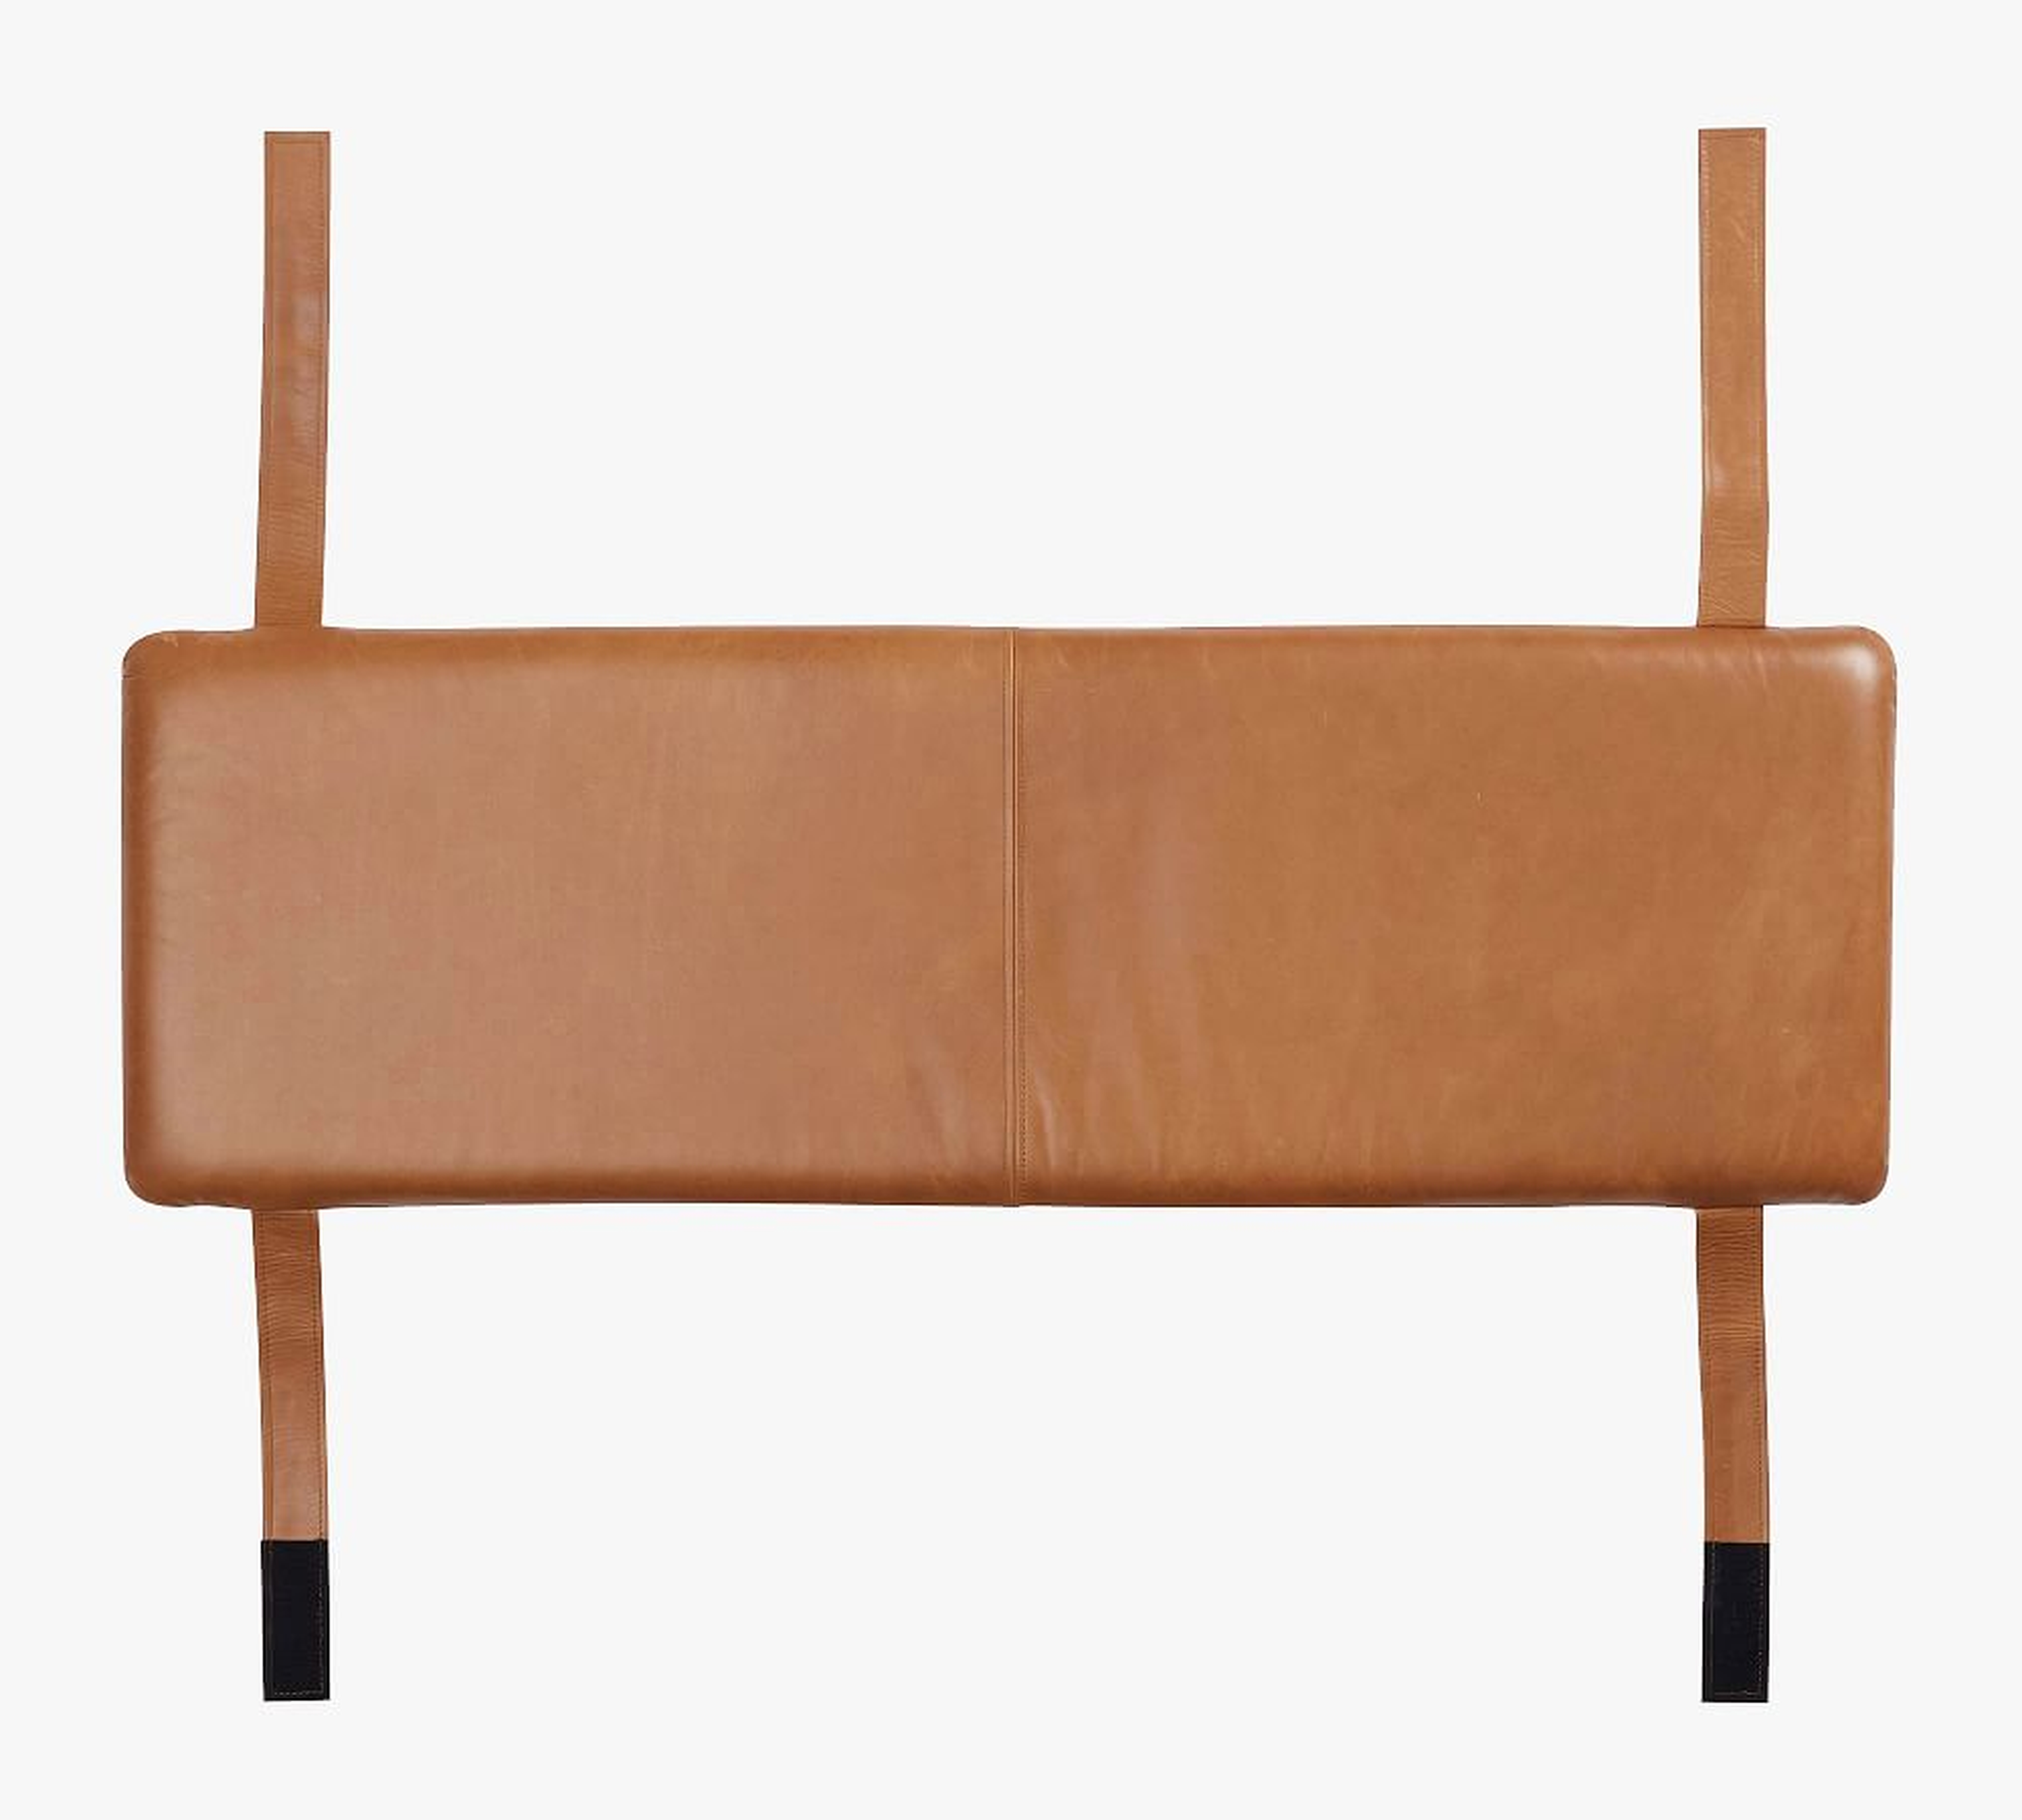 Malibu Leather Backless Bench Cushion, Caramel - Pottery Barn